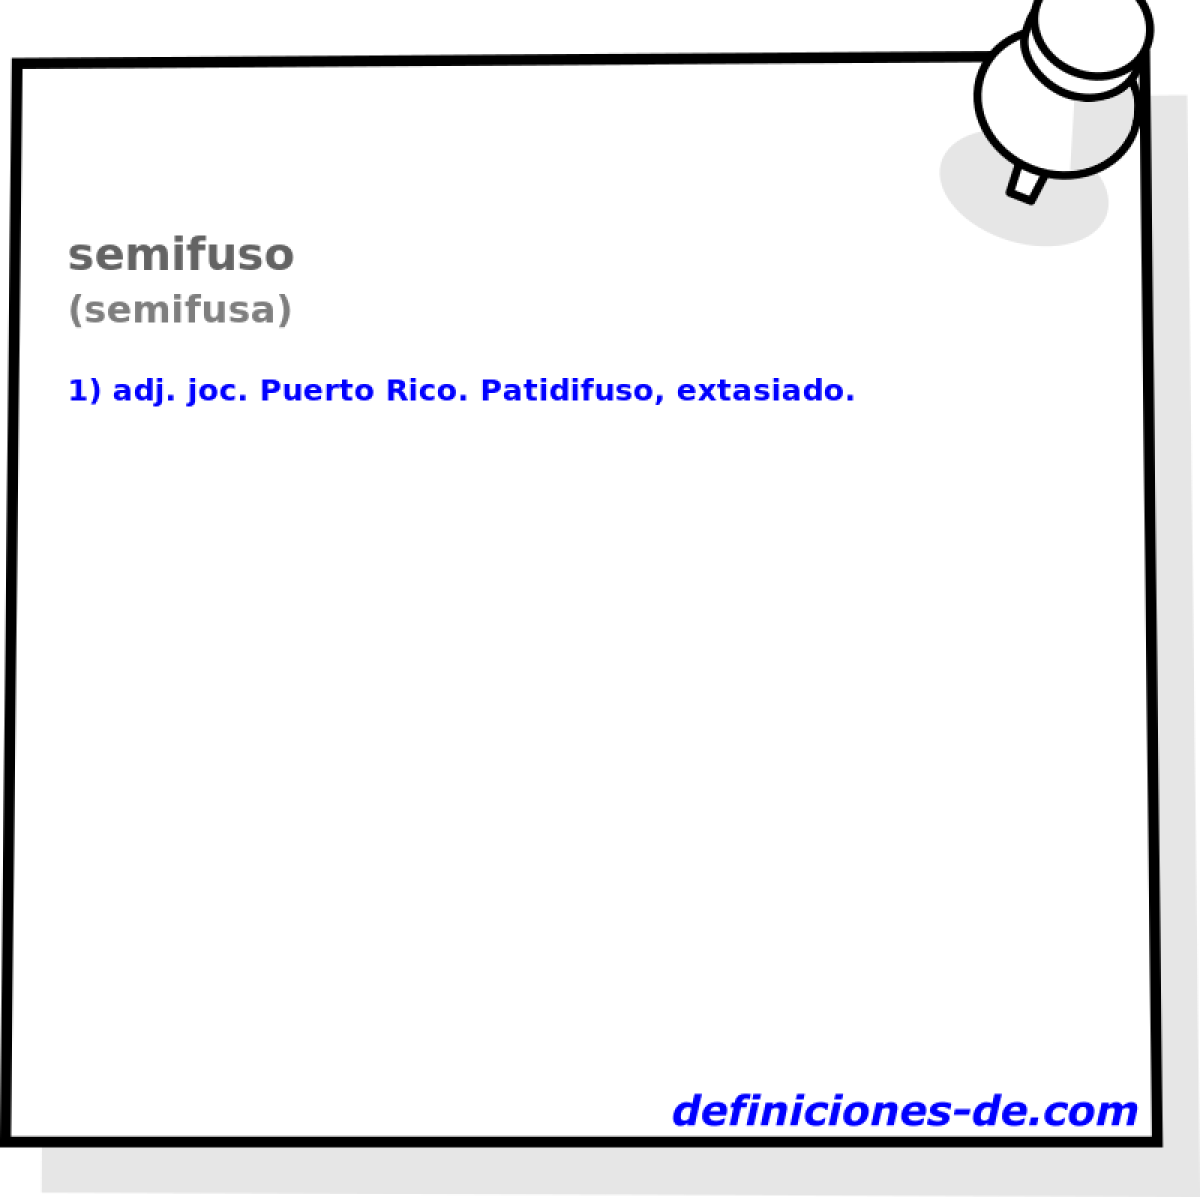 semifuso (semifusa)